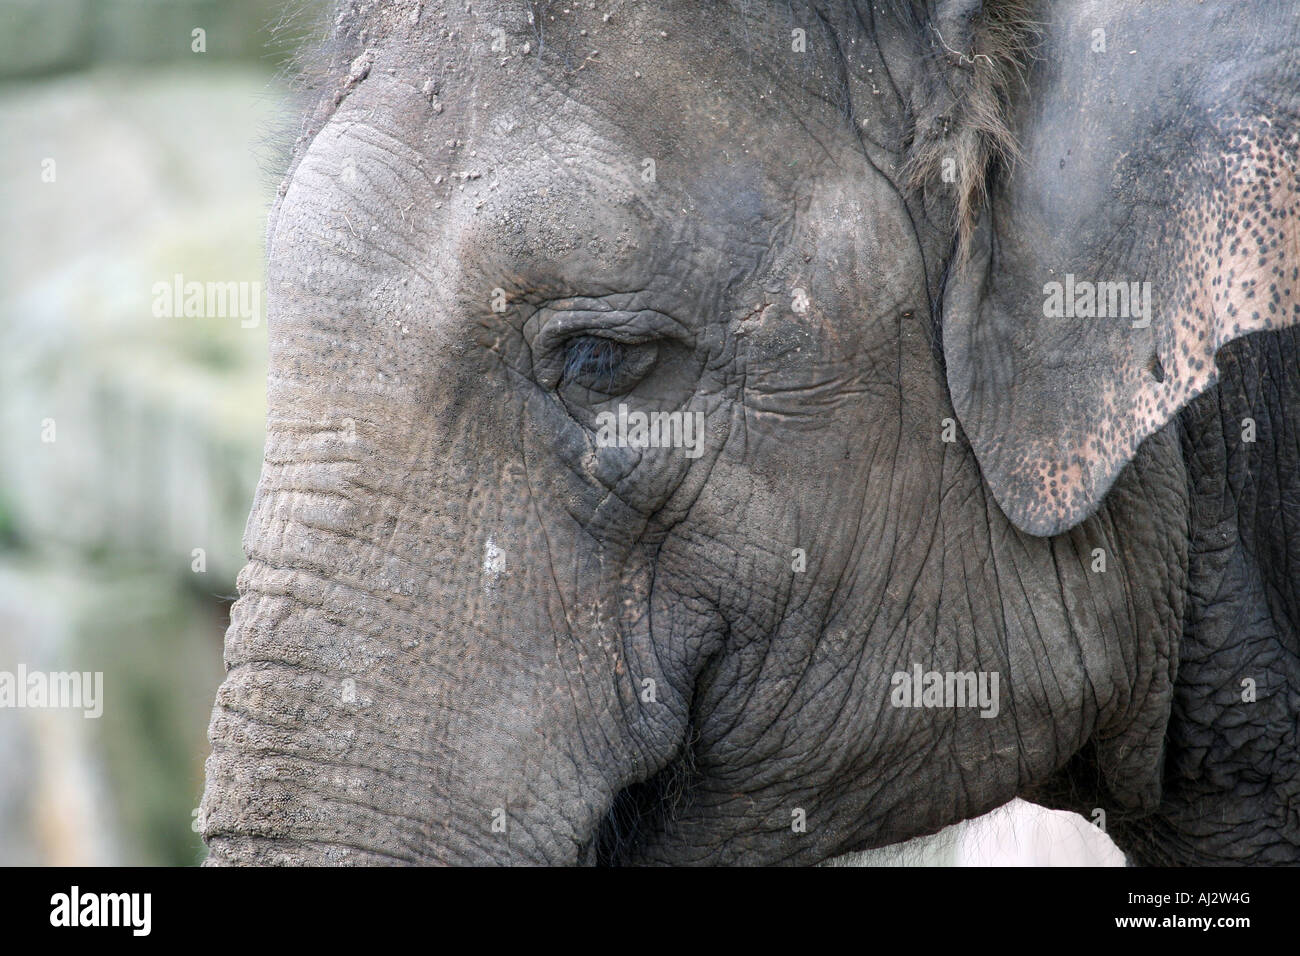 Retrato de un elefante africano Loxodonta africana. Foto de stock